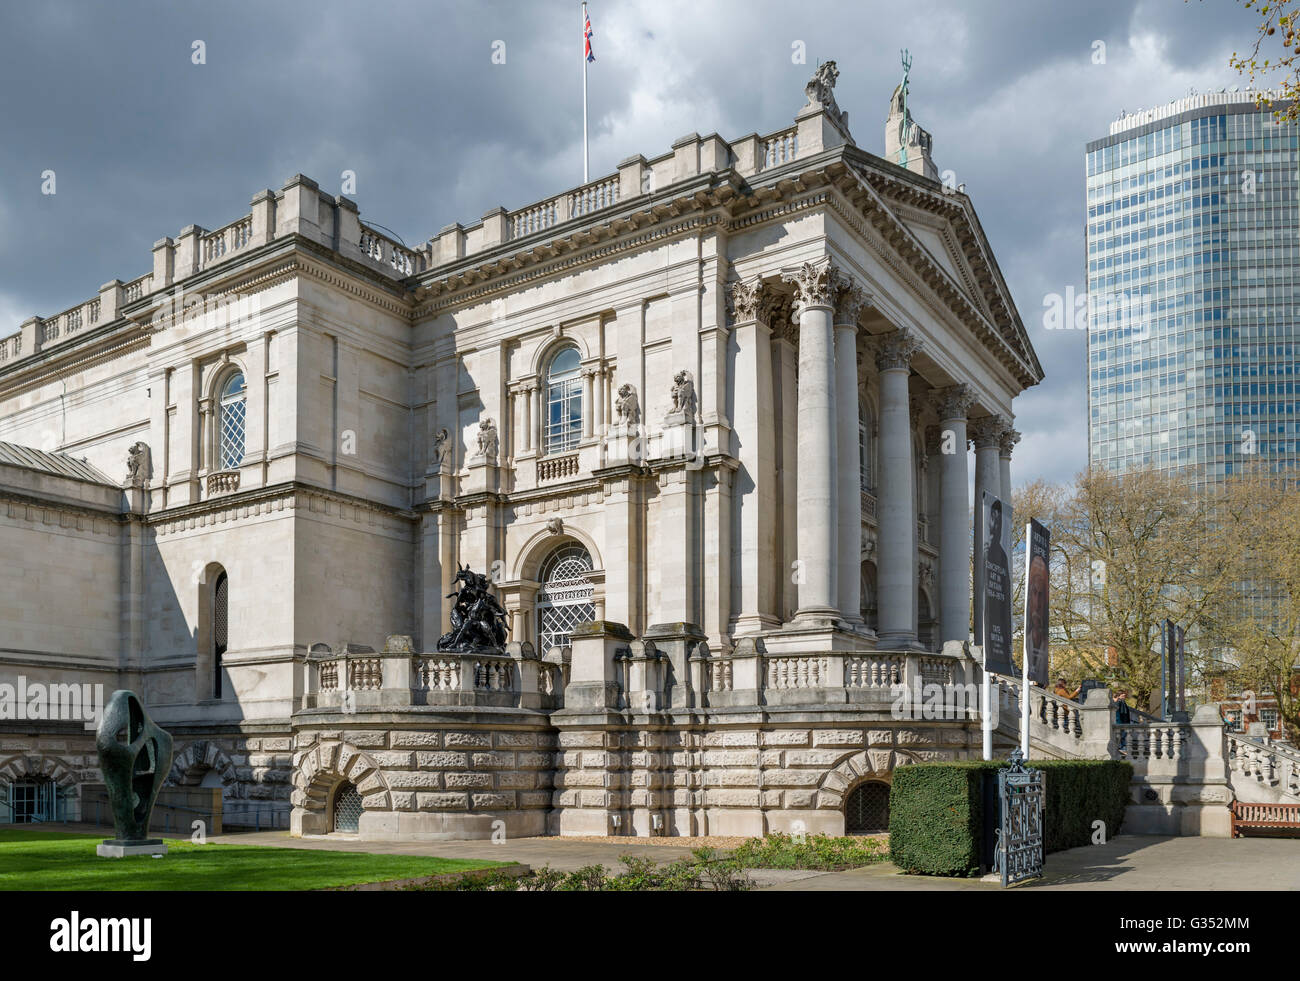 Entrée de galerie d'art Tate Britain, Millbank, London, England, UK Banque D'Images